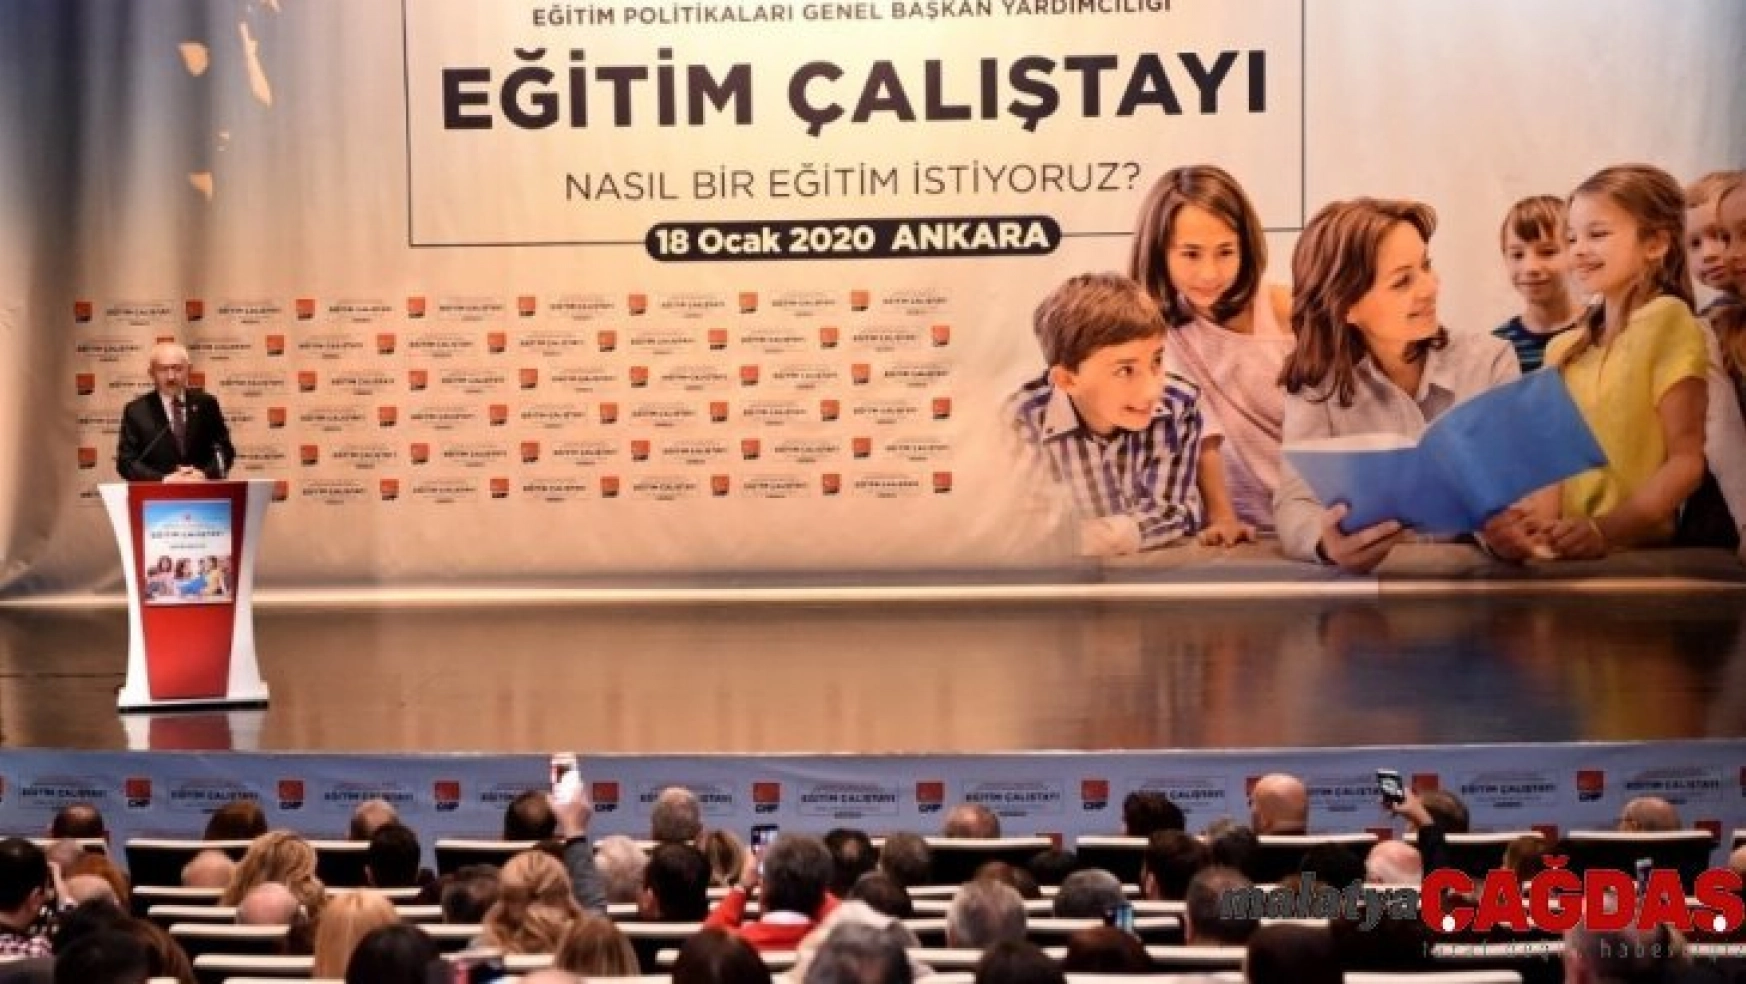 CHP Genel Başkanı Kemal Kılıçdaroğlu: 'Farklı düşünceler ülkenin zenginliğidir'